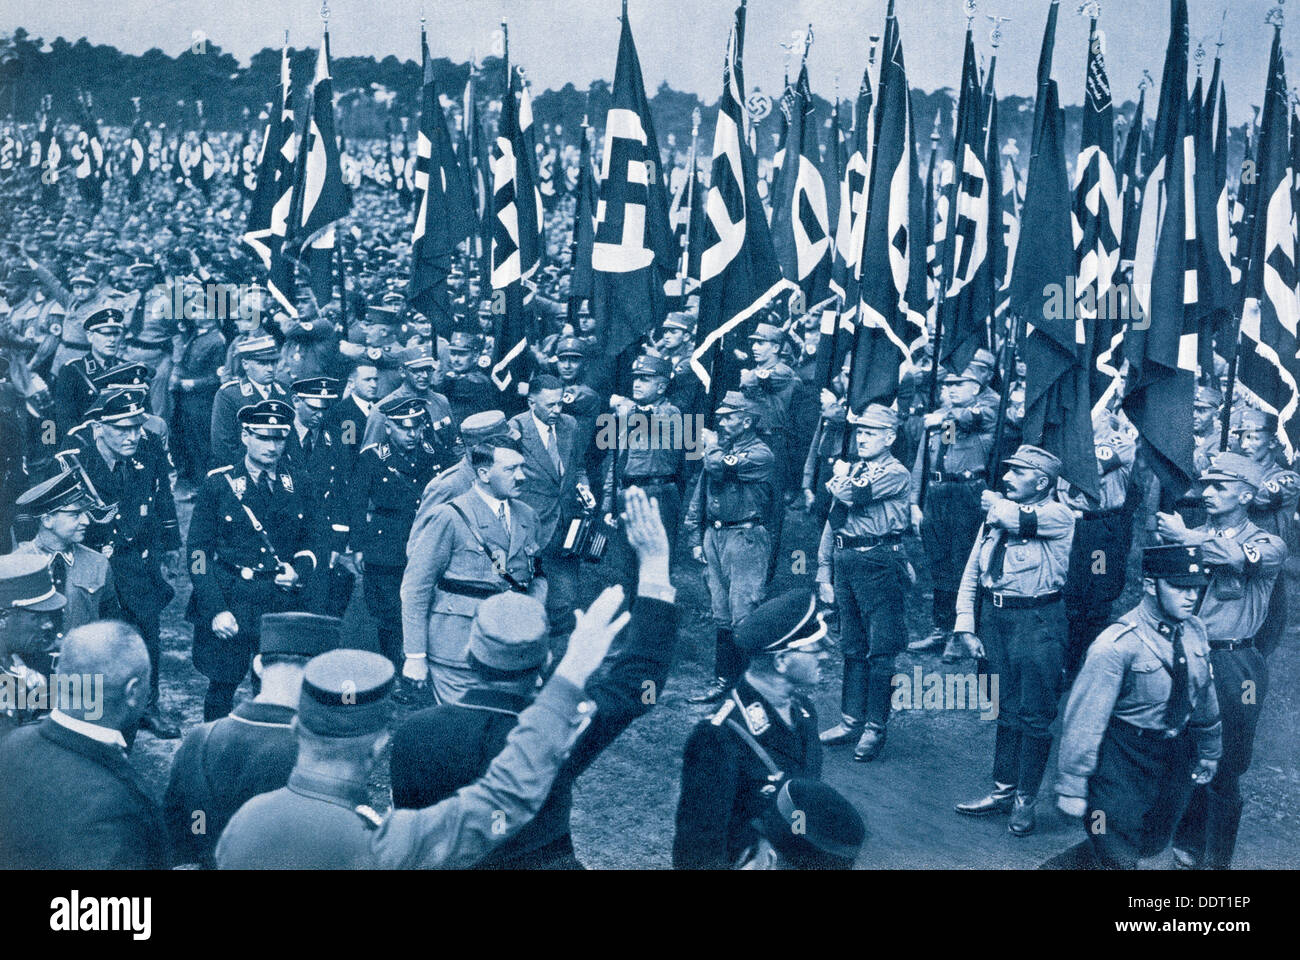 Adolf Hitler, escorté par les dirigeants SS, inspecte la SA à un rassemblement nazi à Nuremberg, en 1933. Artiste : Inconnu Banque D'Images